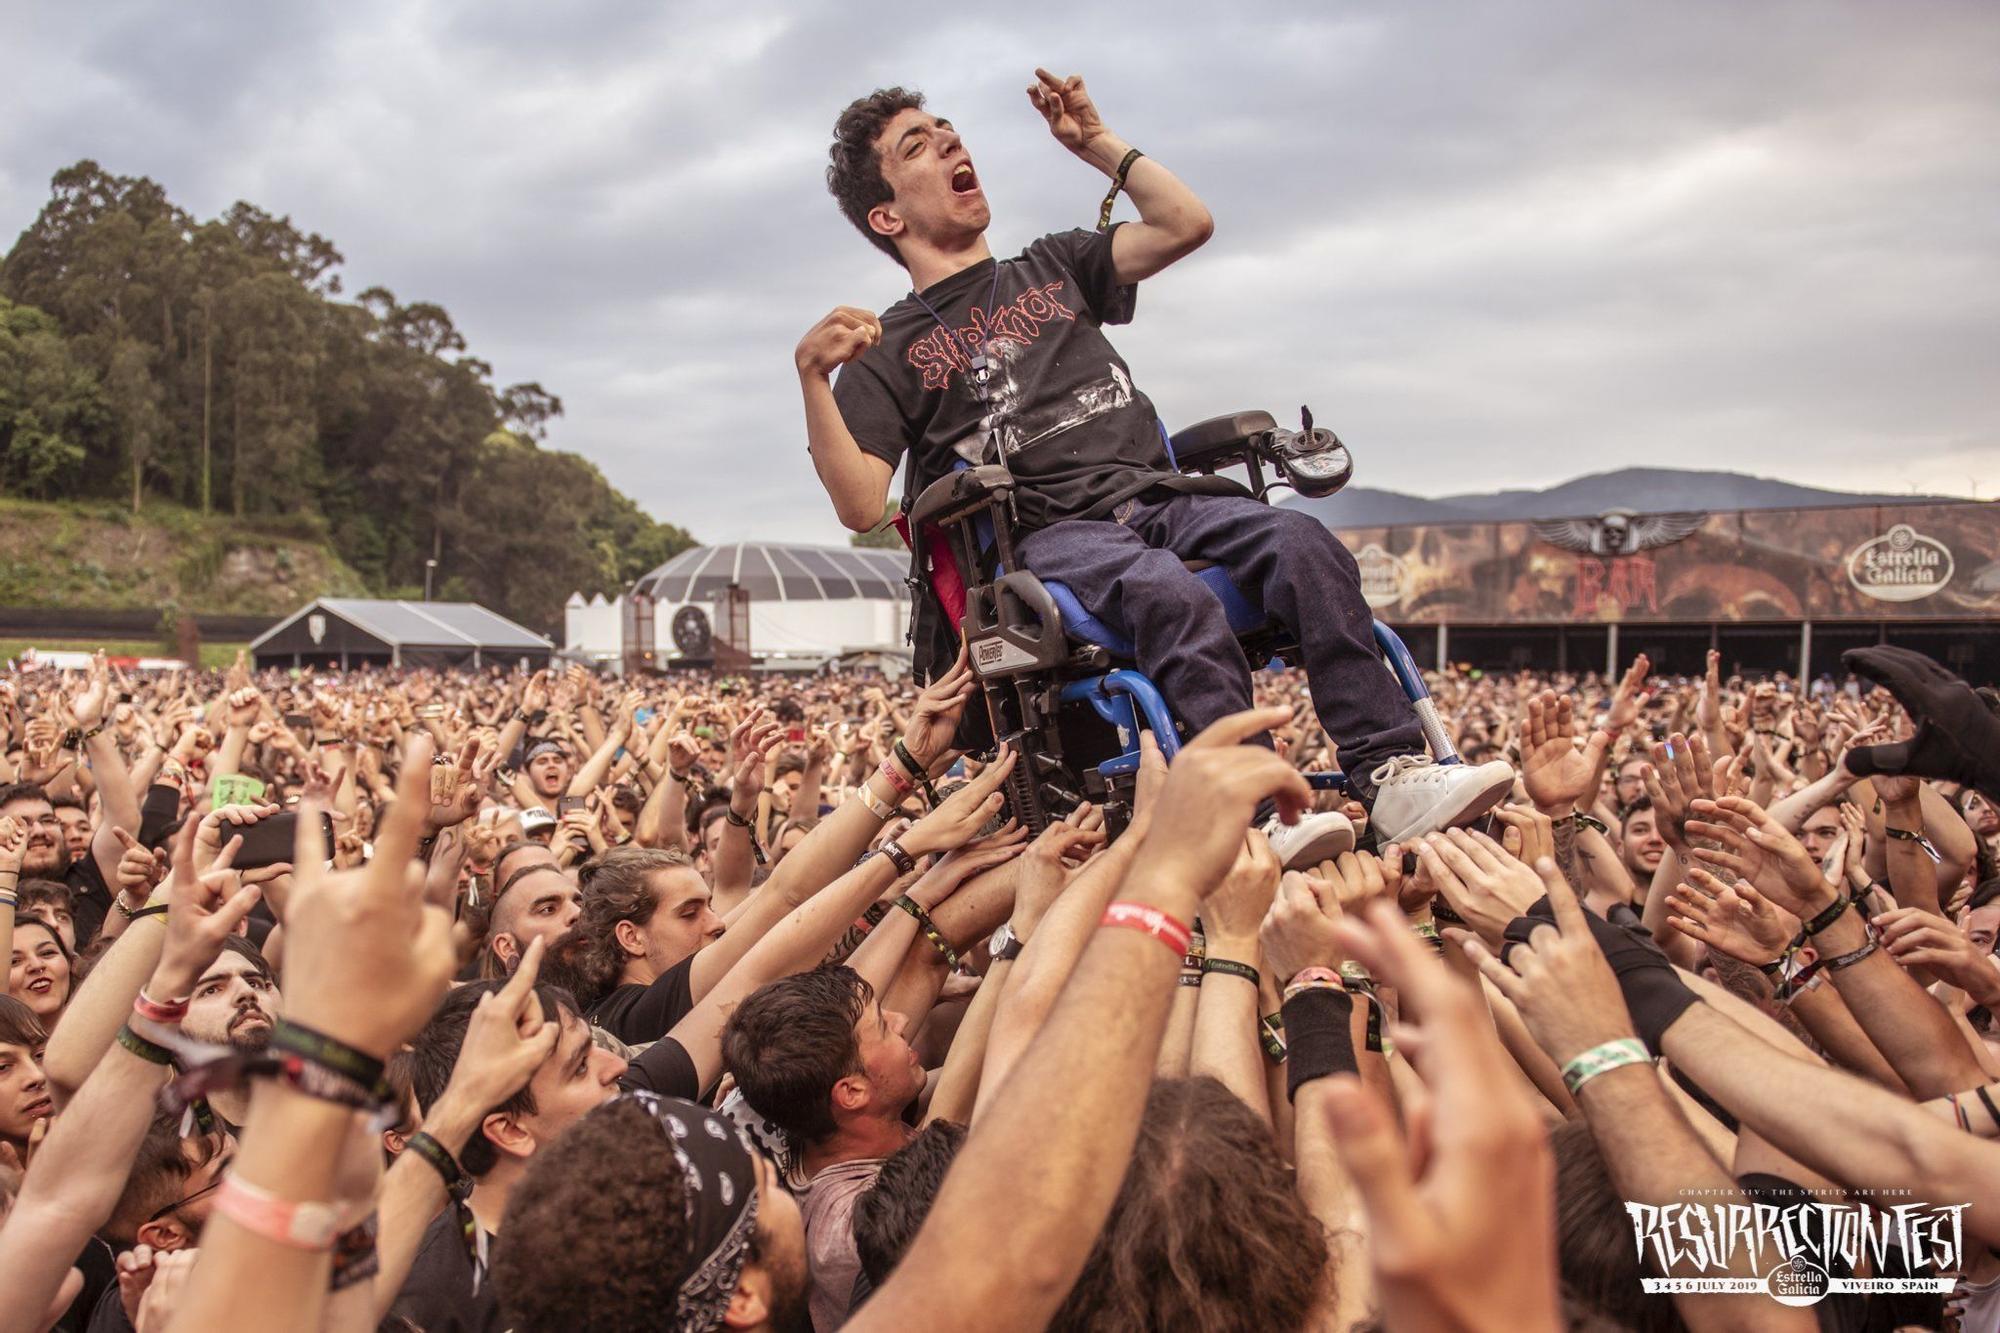 Decenas de jóvenes levantan a pulso la silla de ruedas de un chico con parálisis cerebral durante el concierto de Trivium en el festival Resurrection Fest en su última edición de 2019.